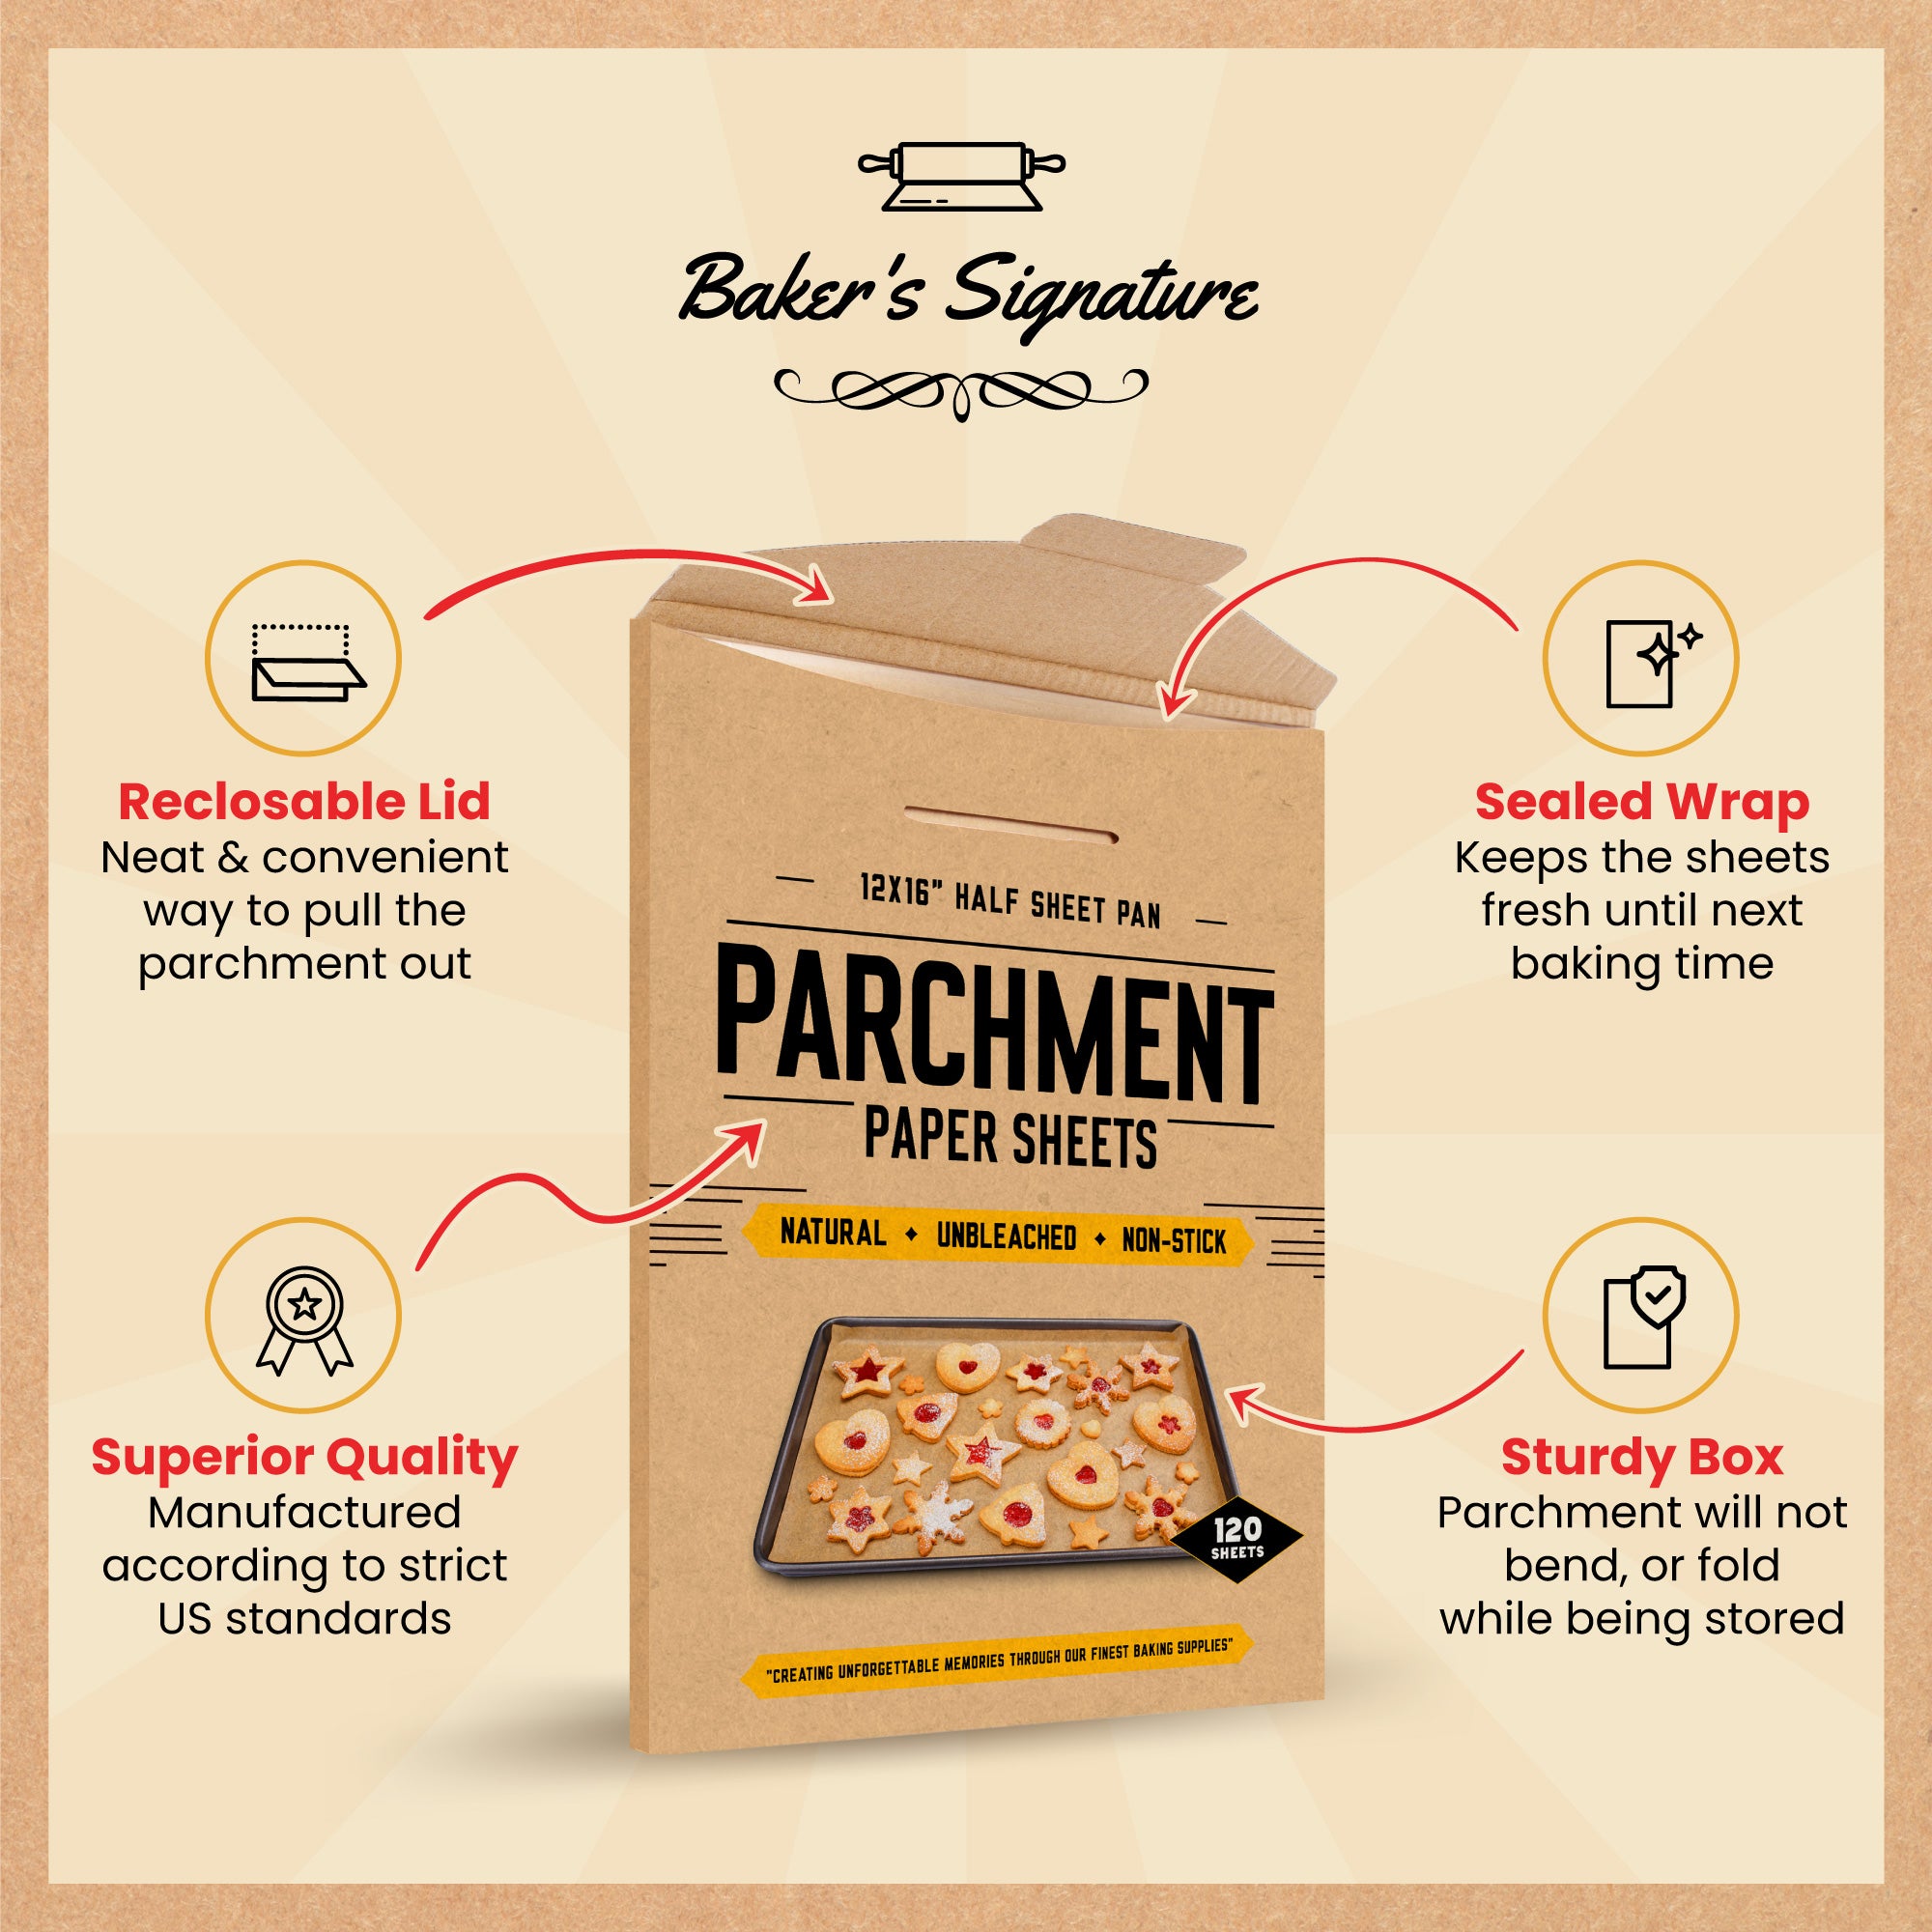 Baker's Secret Paper Microwave Safe Unbleached Parchment Paper Sheets 8 Round - Brown